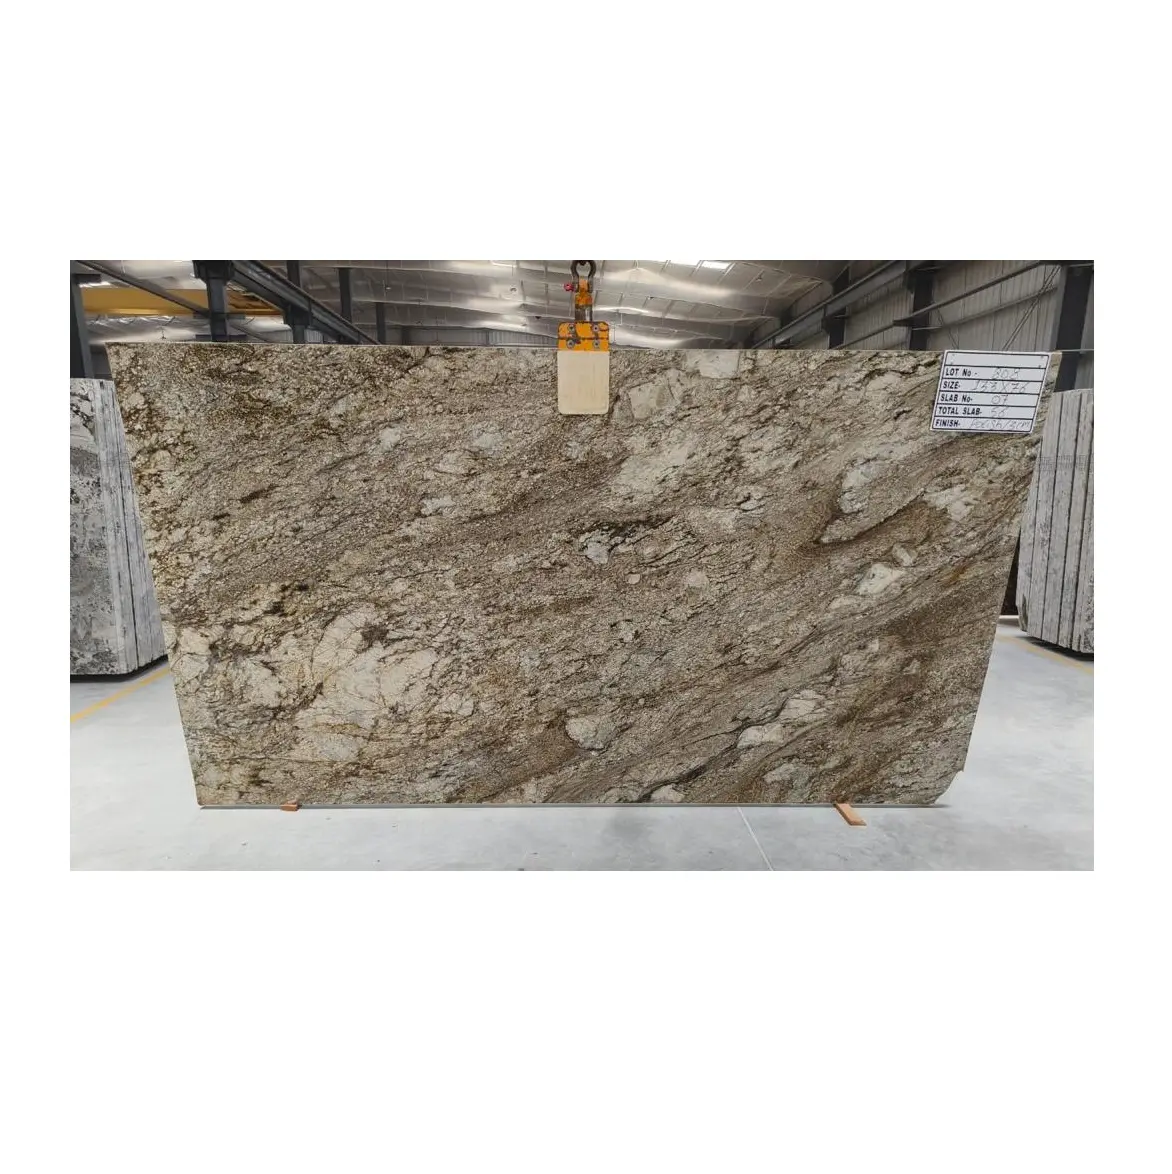 निर्यात गुणवत्ता उच्च पॉलिश नीले टिब्बा ग्रेनाइट पत्थर की पटिया पत्थर निर्माण में उपयोग के लिए थोक मूल्य पर उपलब्ध